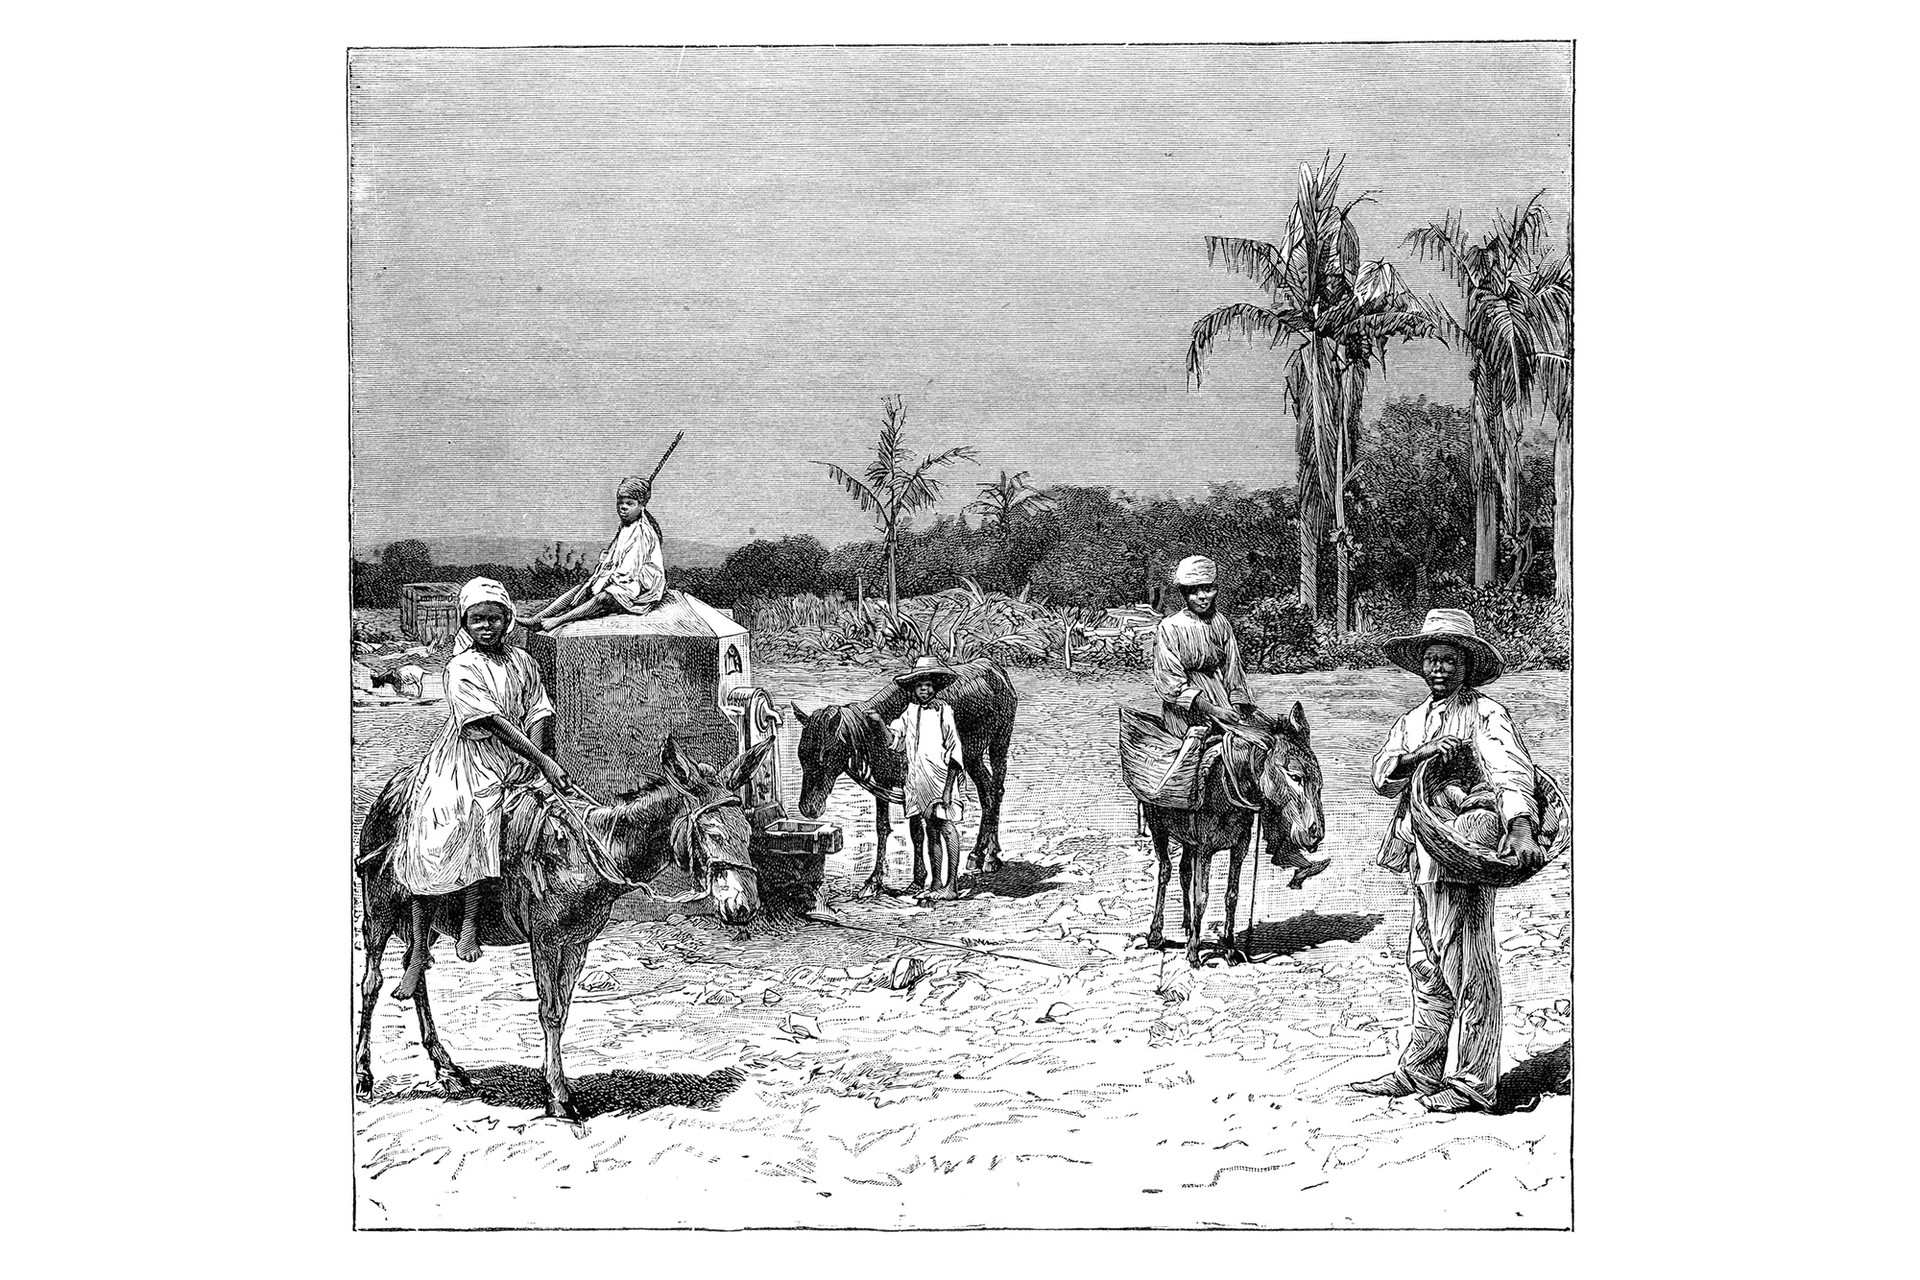 Group of Haitians around 1890